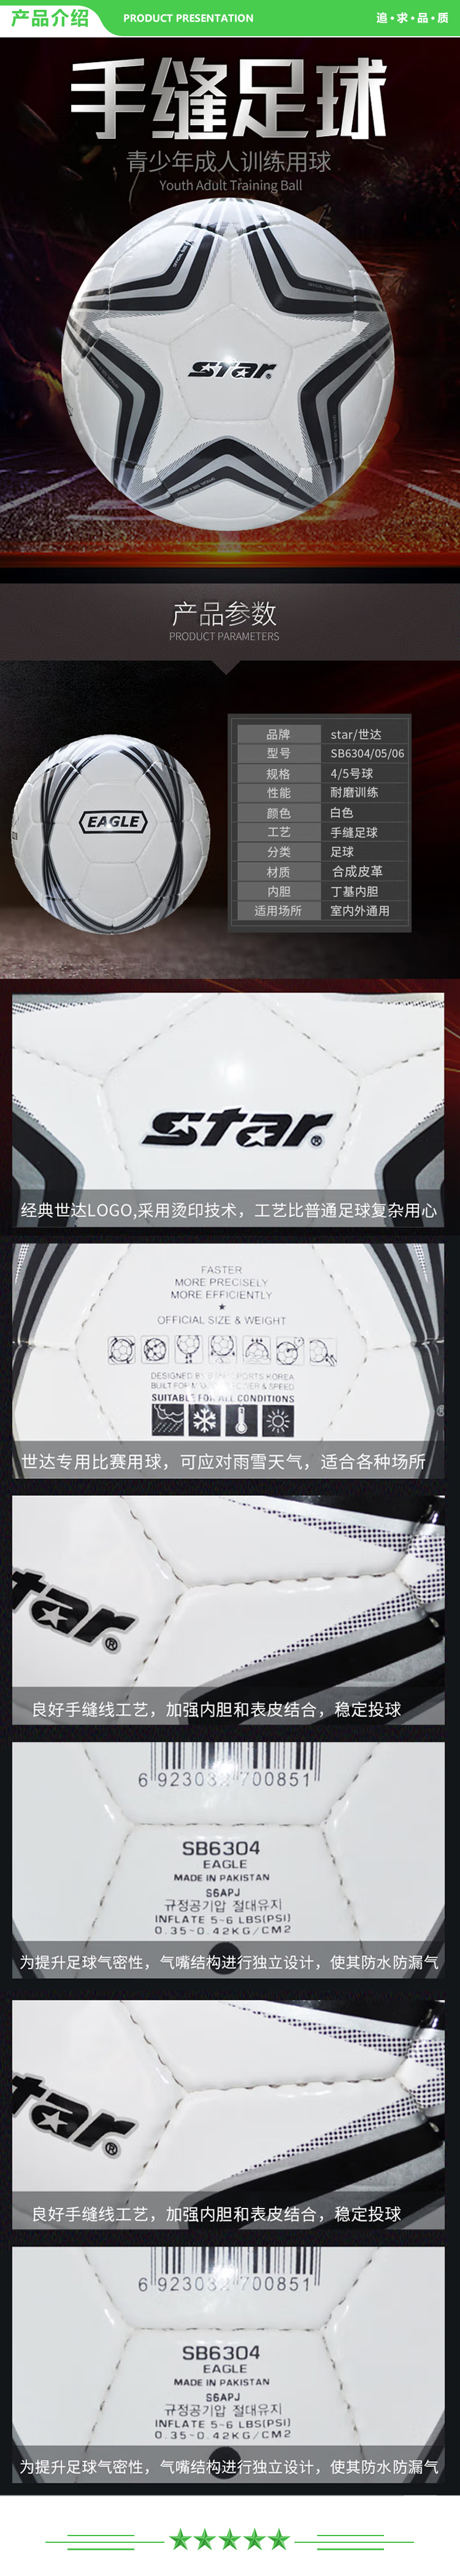 世达 star SB6305 学生足球 耐磨合成皮革青少年训练娱乐用手缝足球 .jpg